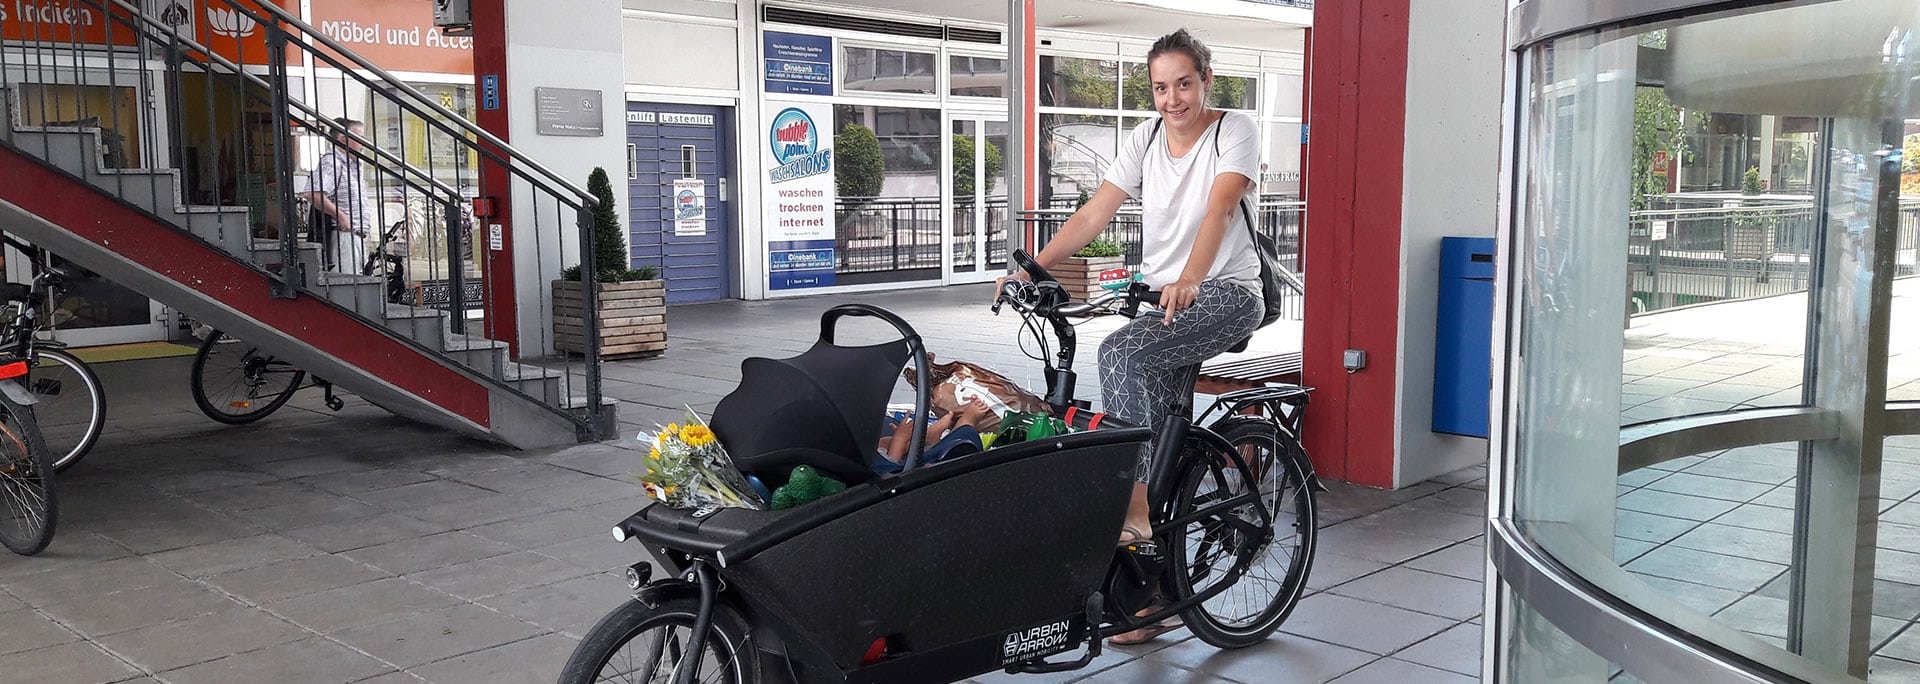 Lastenrad- und Radanhänger-Förderung Stadt Salzburg ausgelaufen